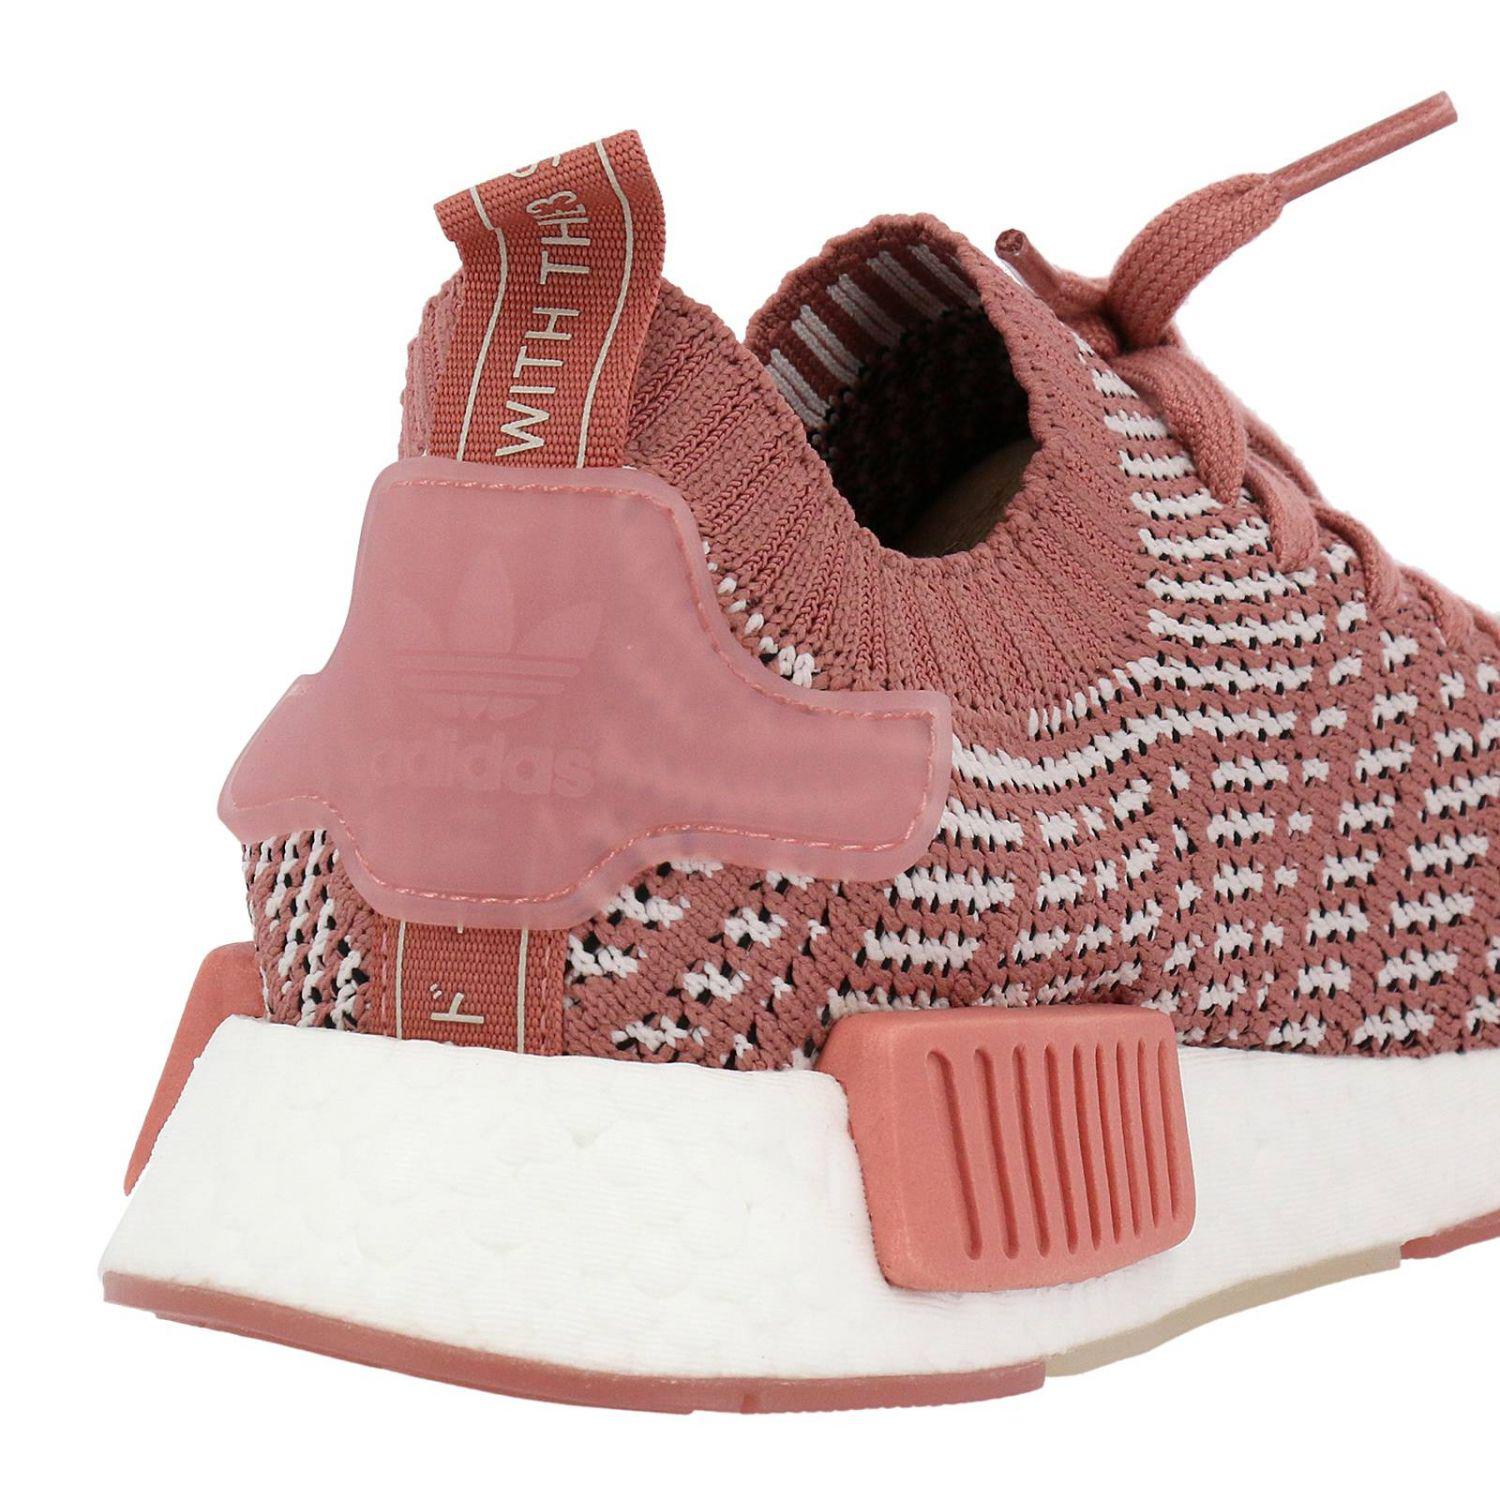 adidas Originals Nmd_r1 Stlt Primeknit Running Shoe in Ash Pink/Orange  Indigo/White (Pink) | Lyst